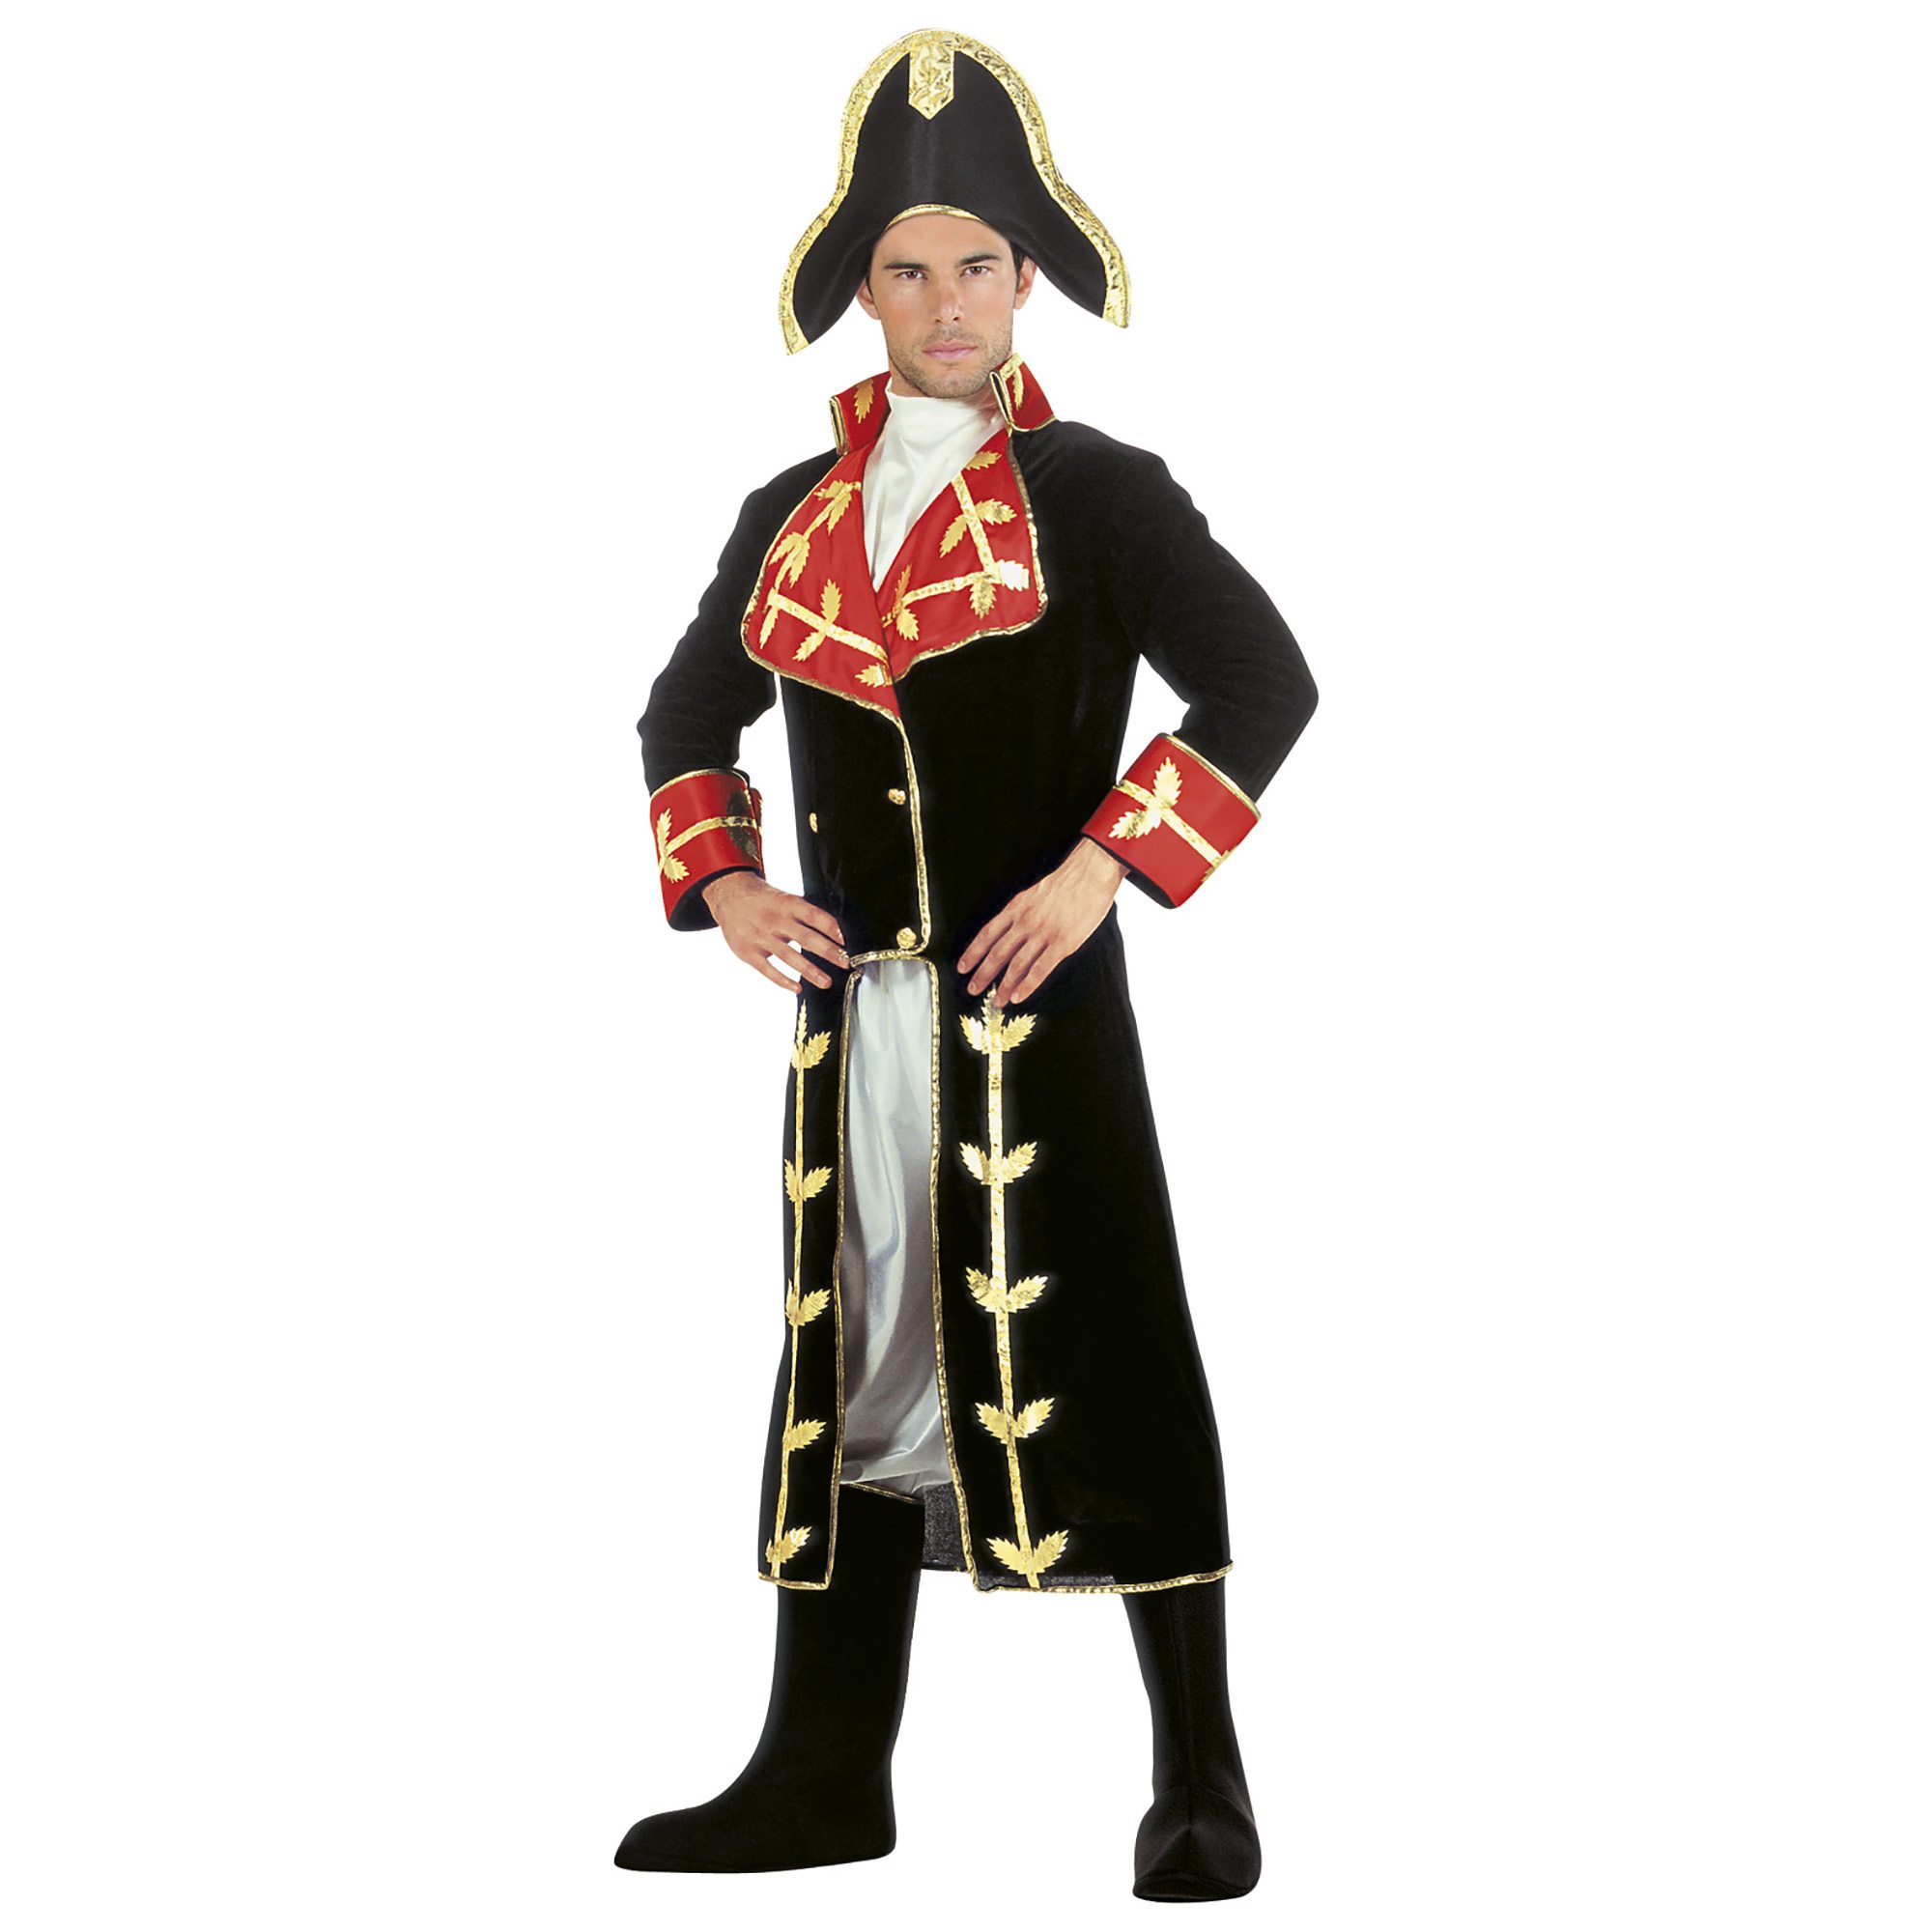 Napoleon bonaparte volwassen kostuum fluweel